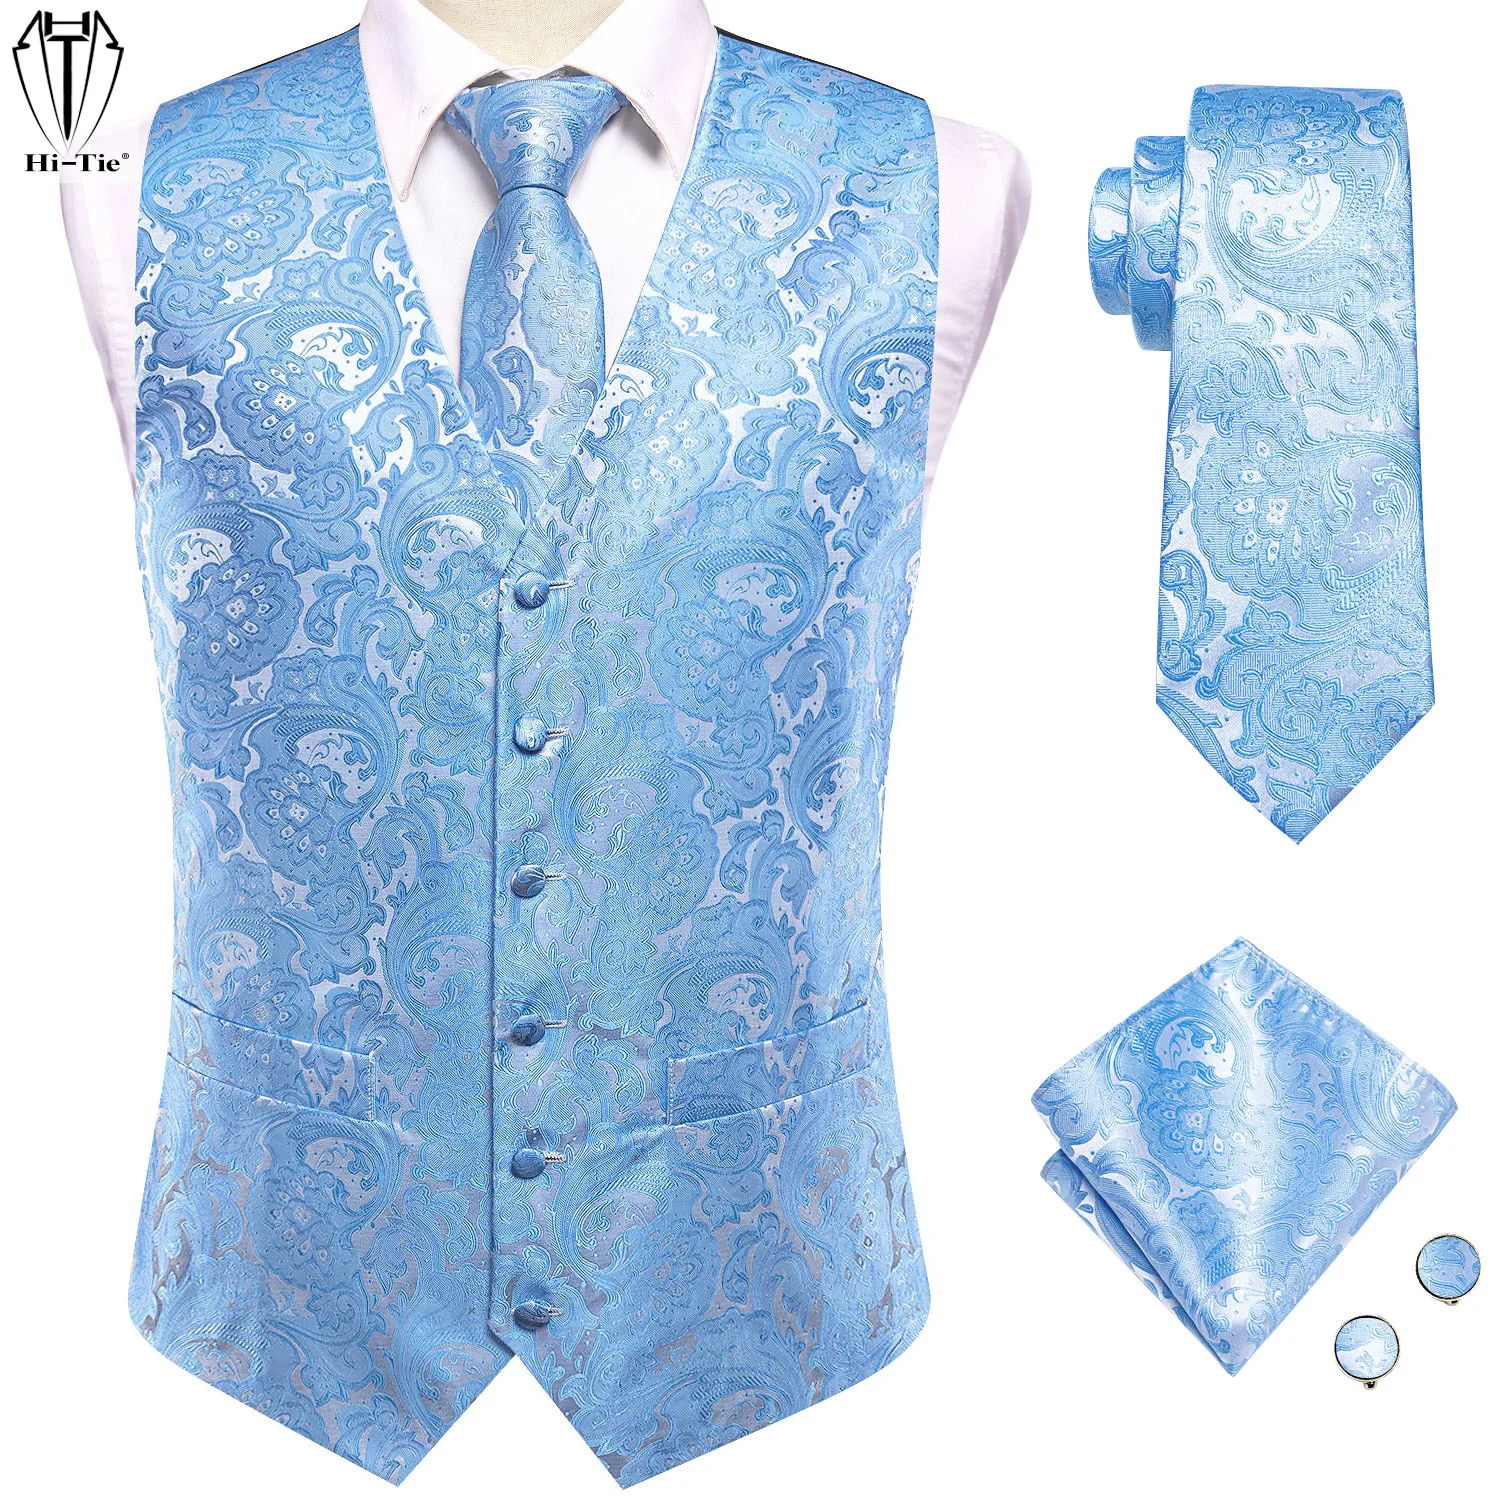 

Шелковый мужской комплект из жилета и галстука Weddin, жилет без рукавов в западном стиле, куртка, галстук, запонки, небесно-голубой, коралловый, Бие, серебряный, нудийский